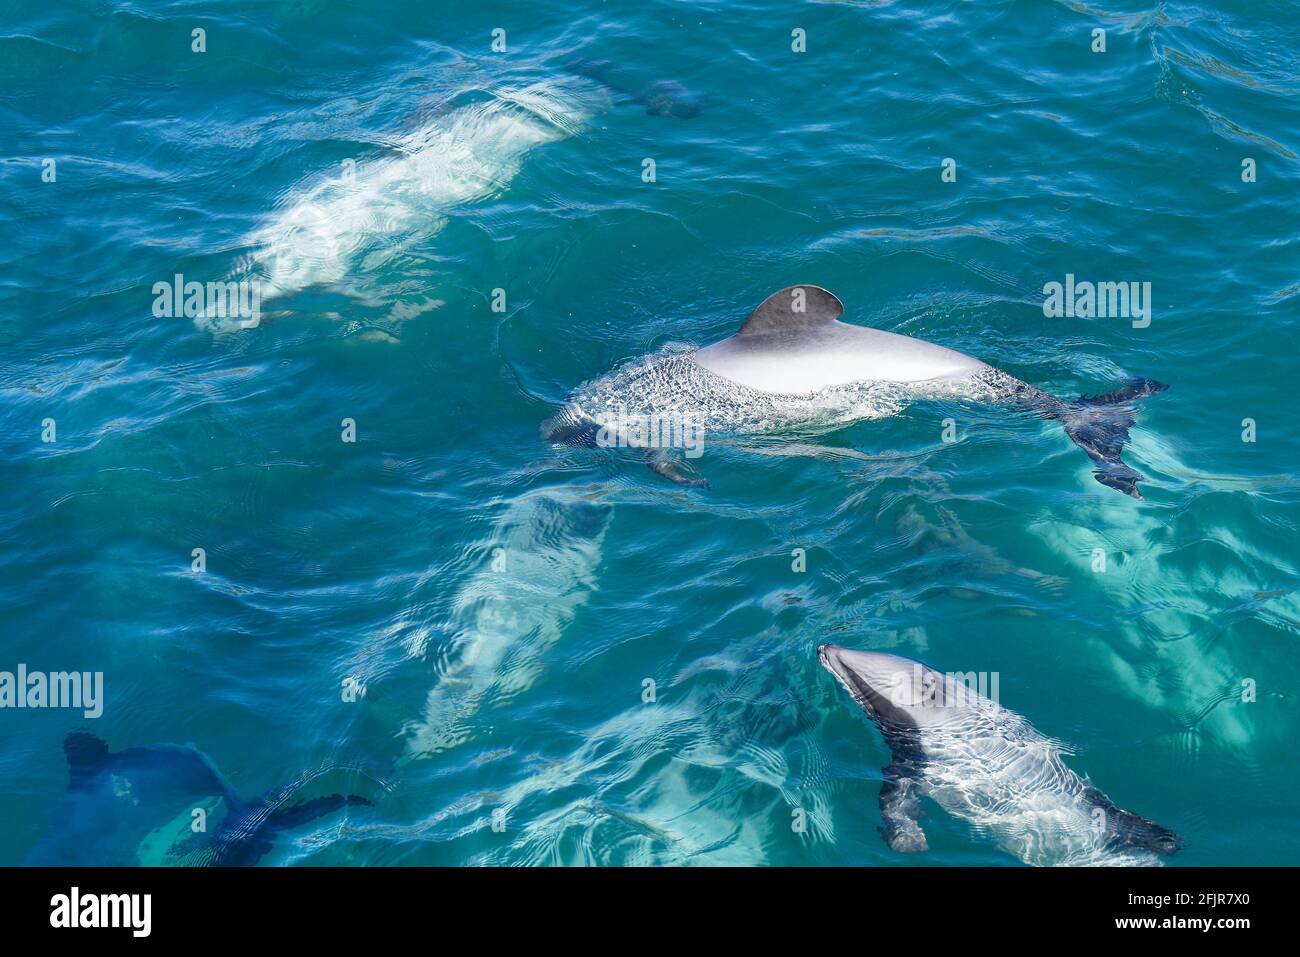 Eine Schote von Hectors Delphinen, gefährdete Delphine, Neuseeland. Cetacean endemisch in Neuseeland. Stockfoto